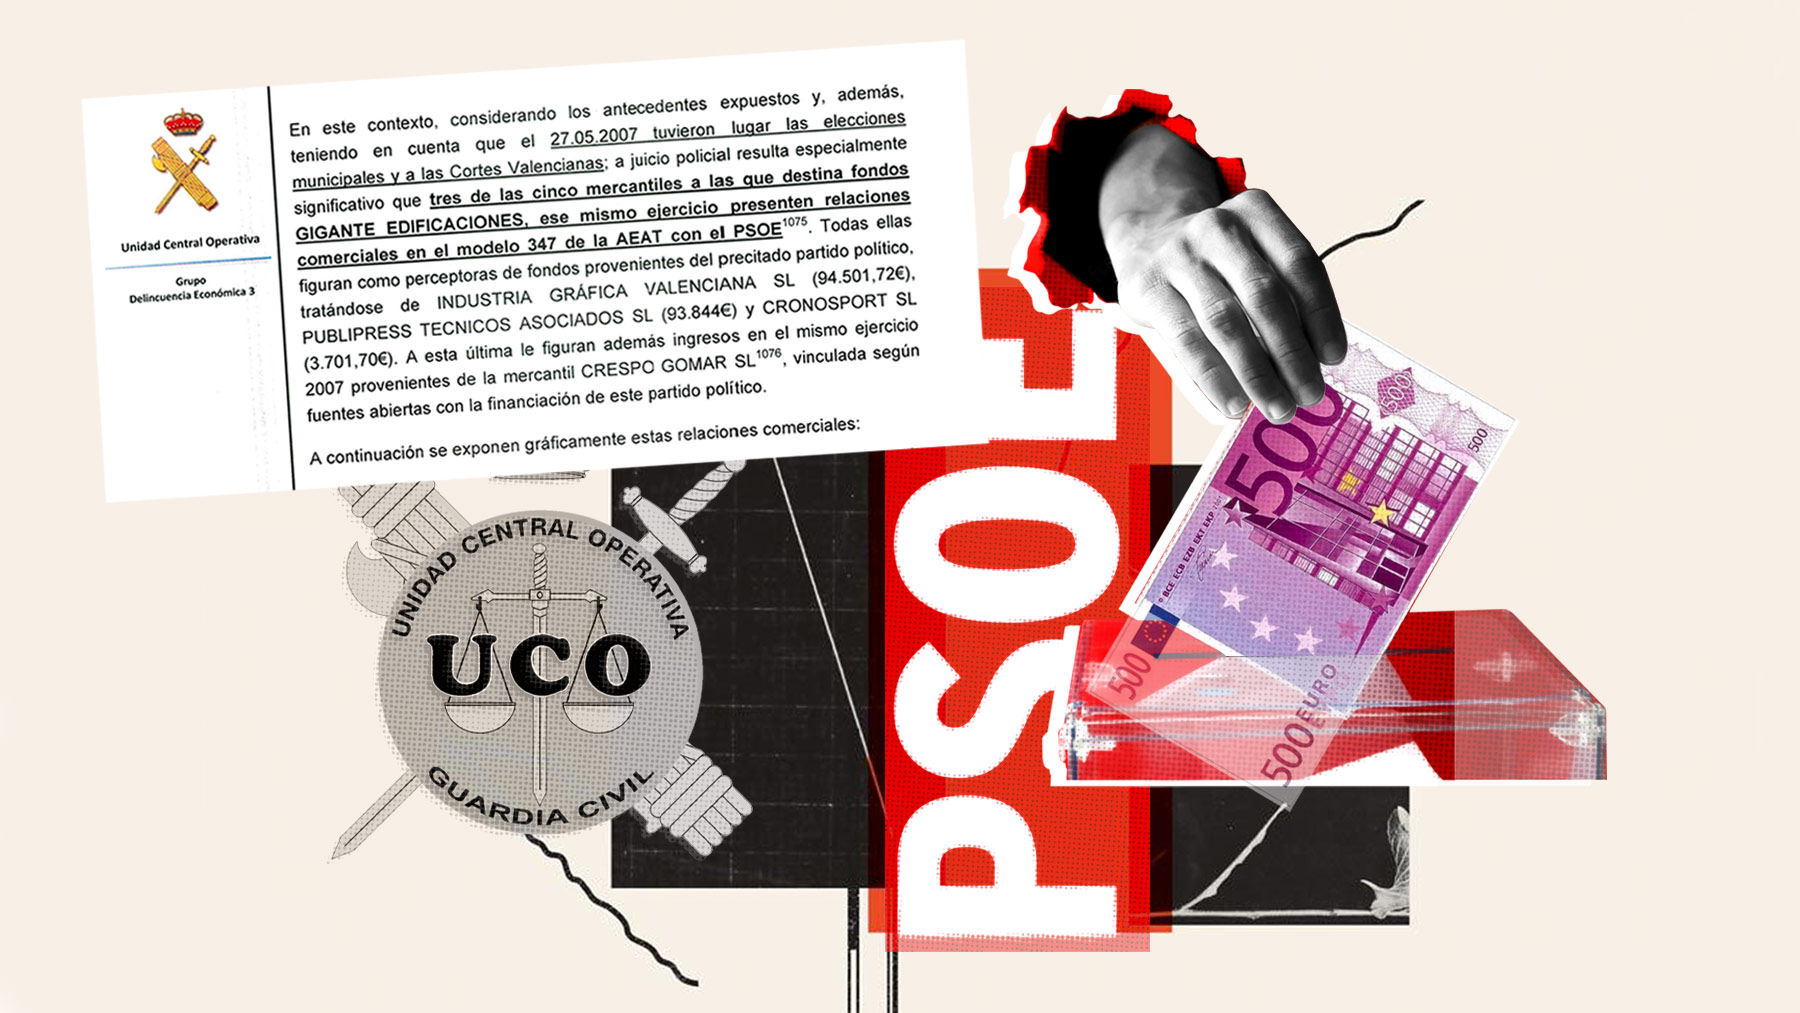 La UCO cifra en más de 240.000 euros el importe pagado por la trama corrupta Azud a las empresas publicitarias que trabajaron en la campaña electoral del PSOE